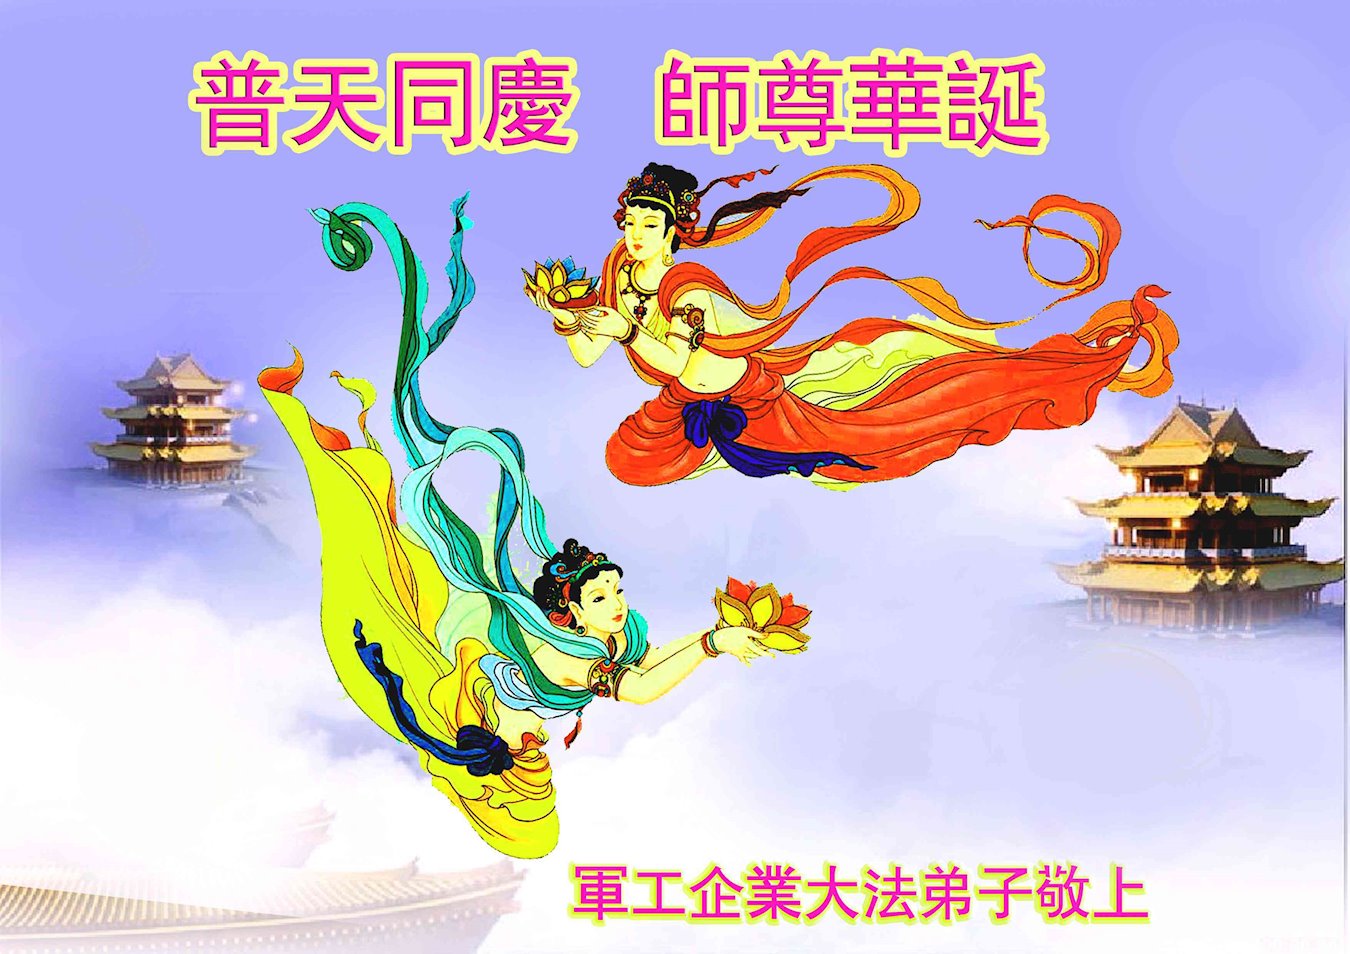 Image for article Les pratiquants de Falun Dafa de 46 professions souhaitent à Maître Li un joyeux anniversaire